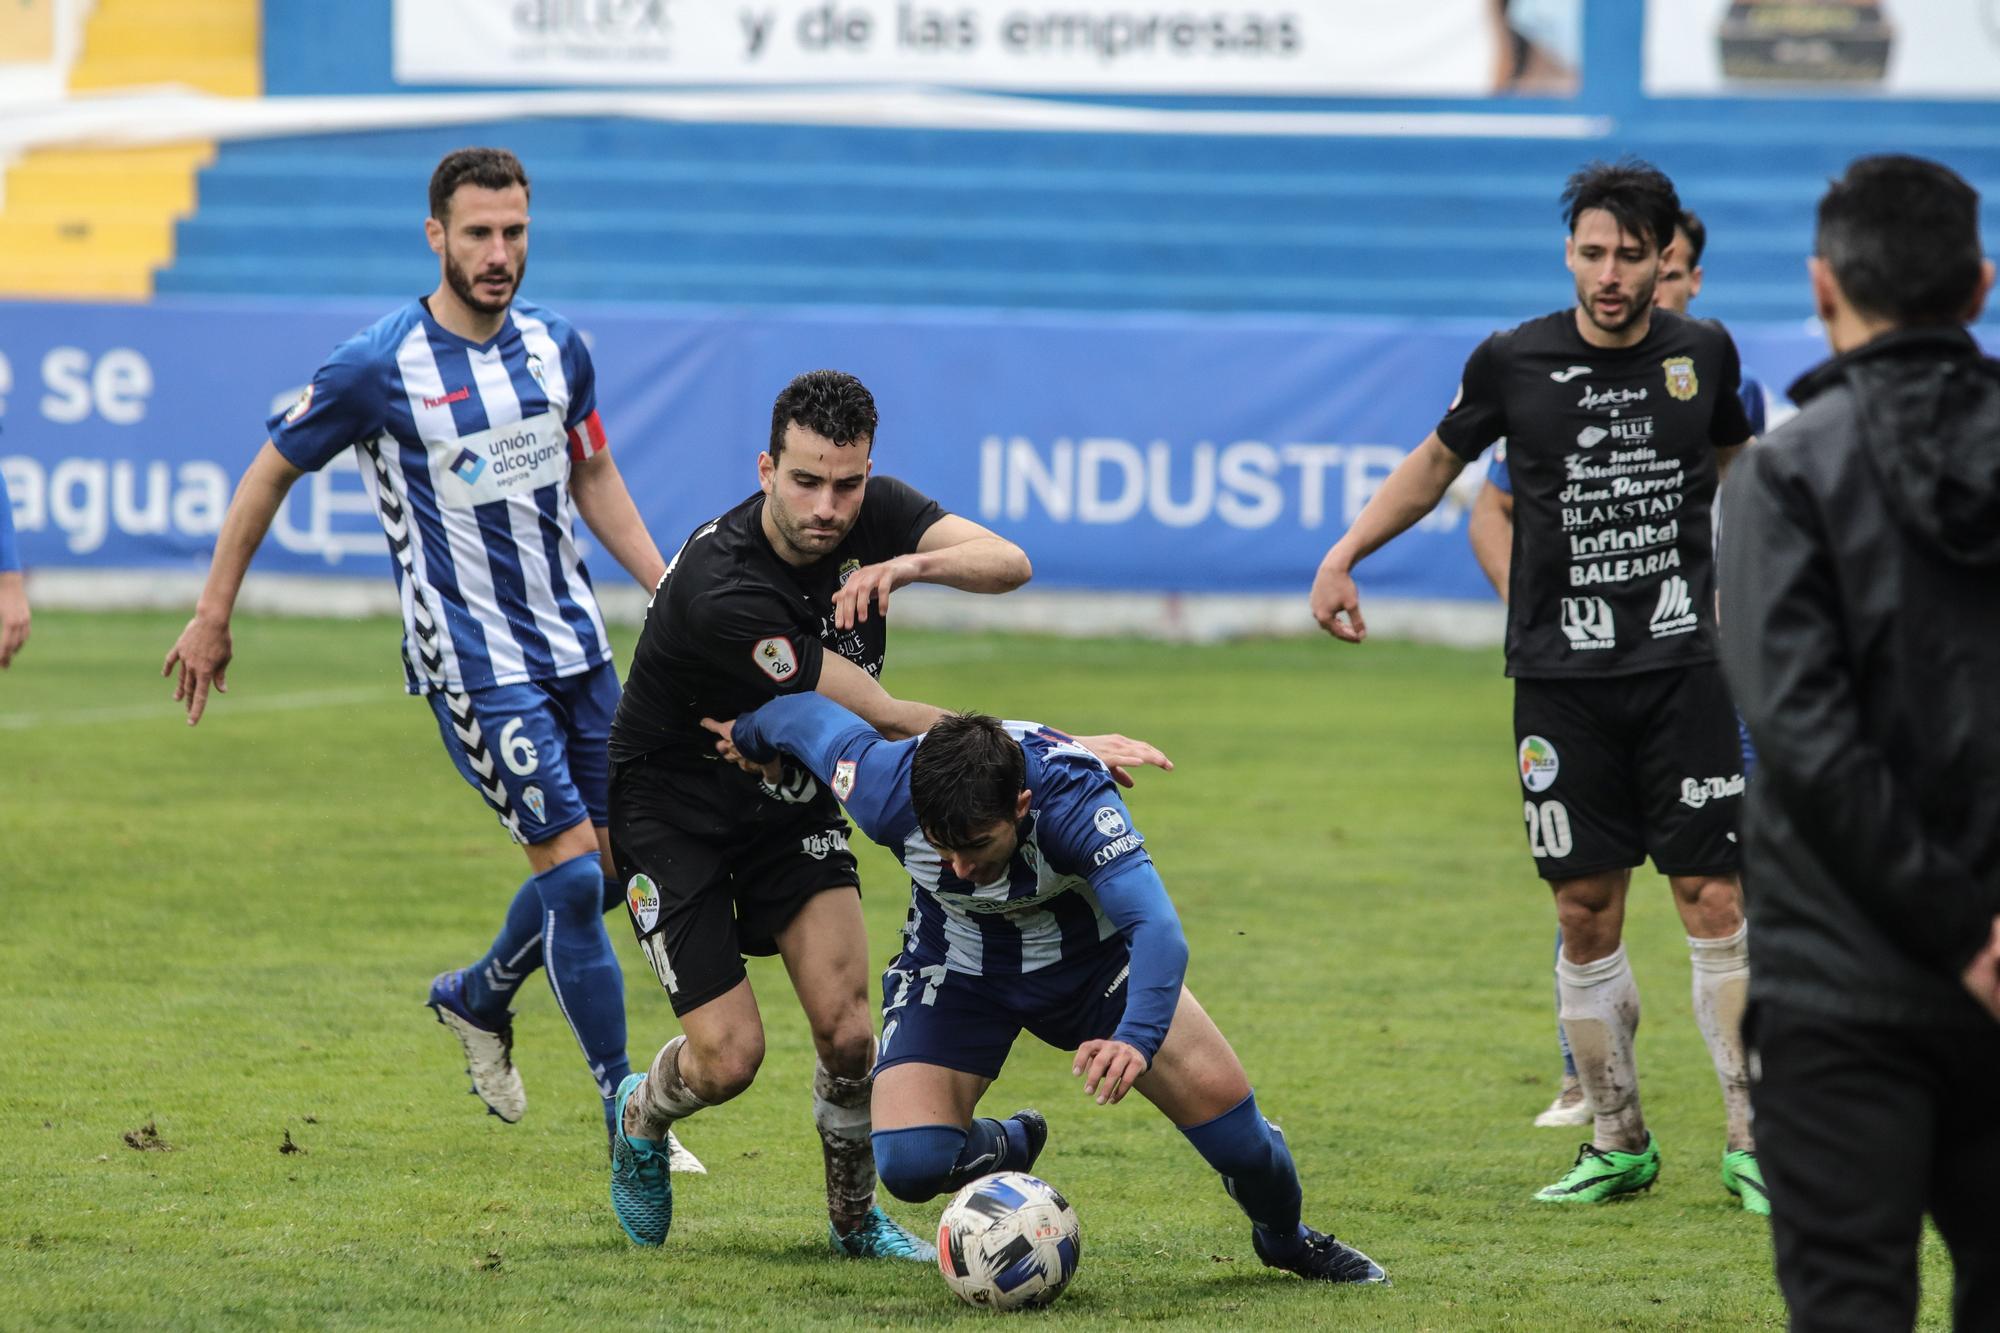 Alcoyano - Peña Deportiva: Las imágenes del partido